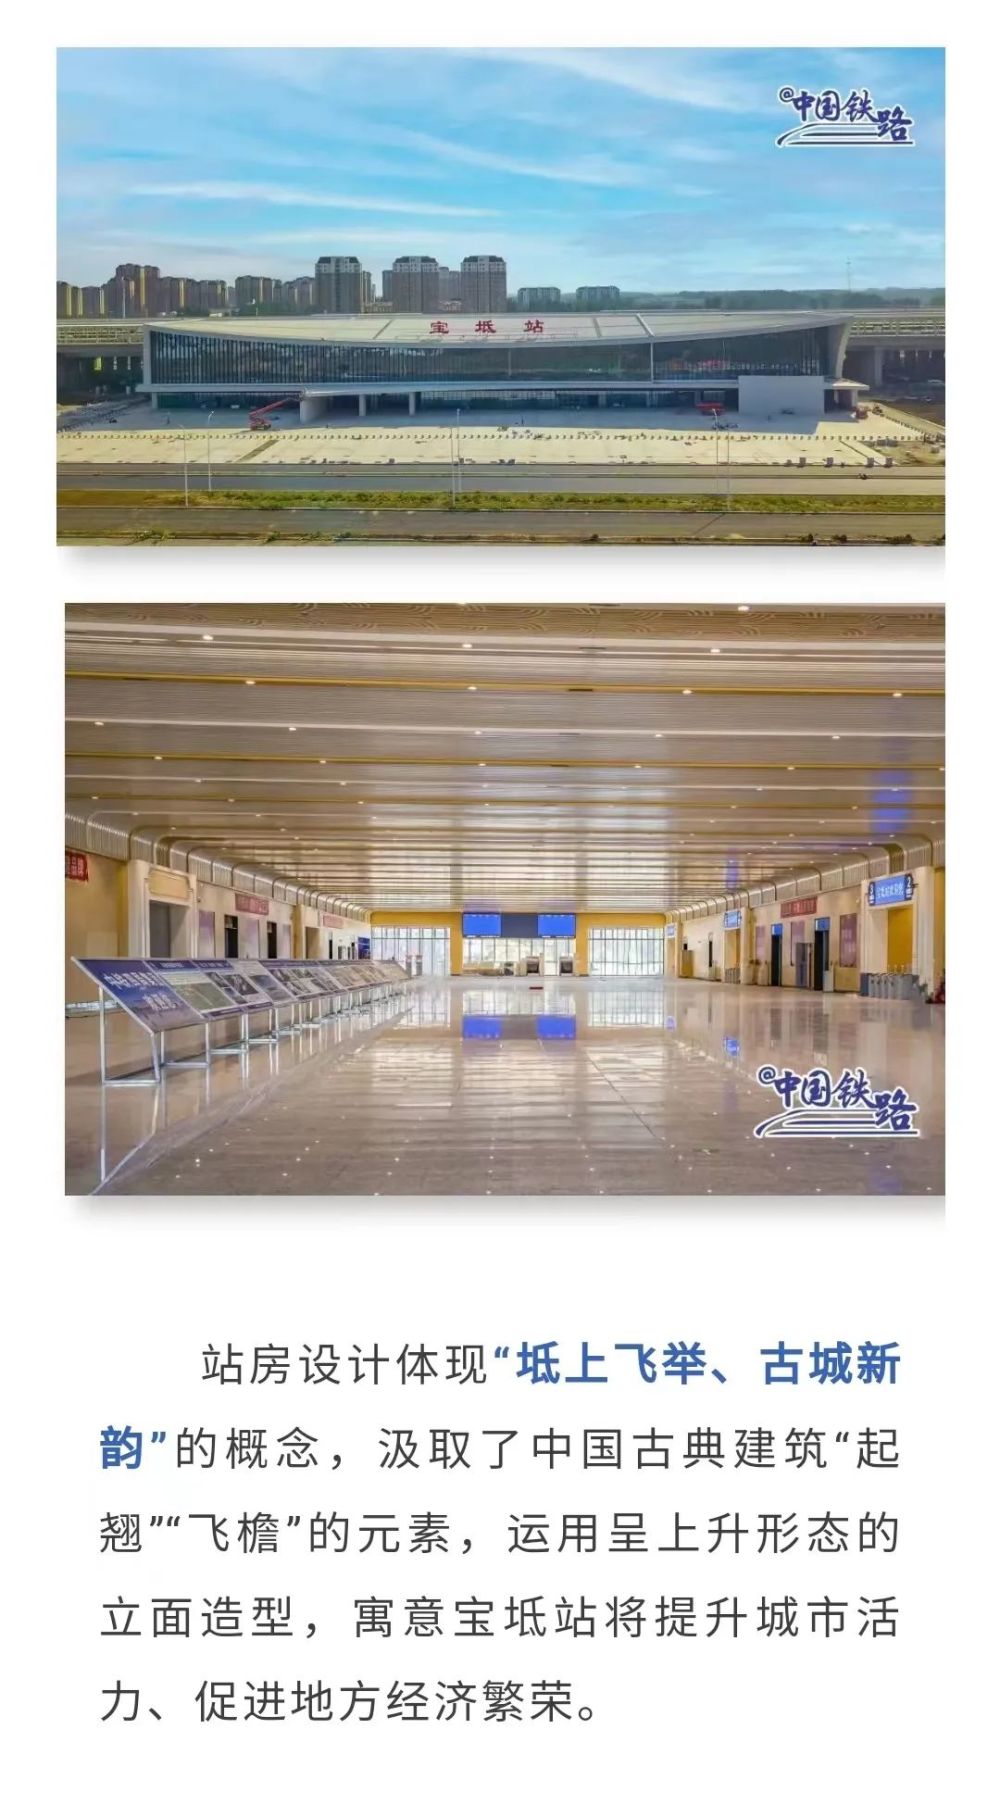 开通倒计时！京唐城际铁路五座新建高铁站集体亮相西安英孚和芝麻街英语哪个好